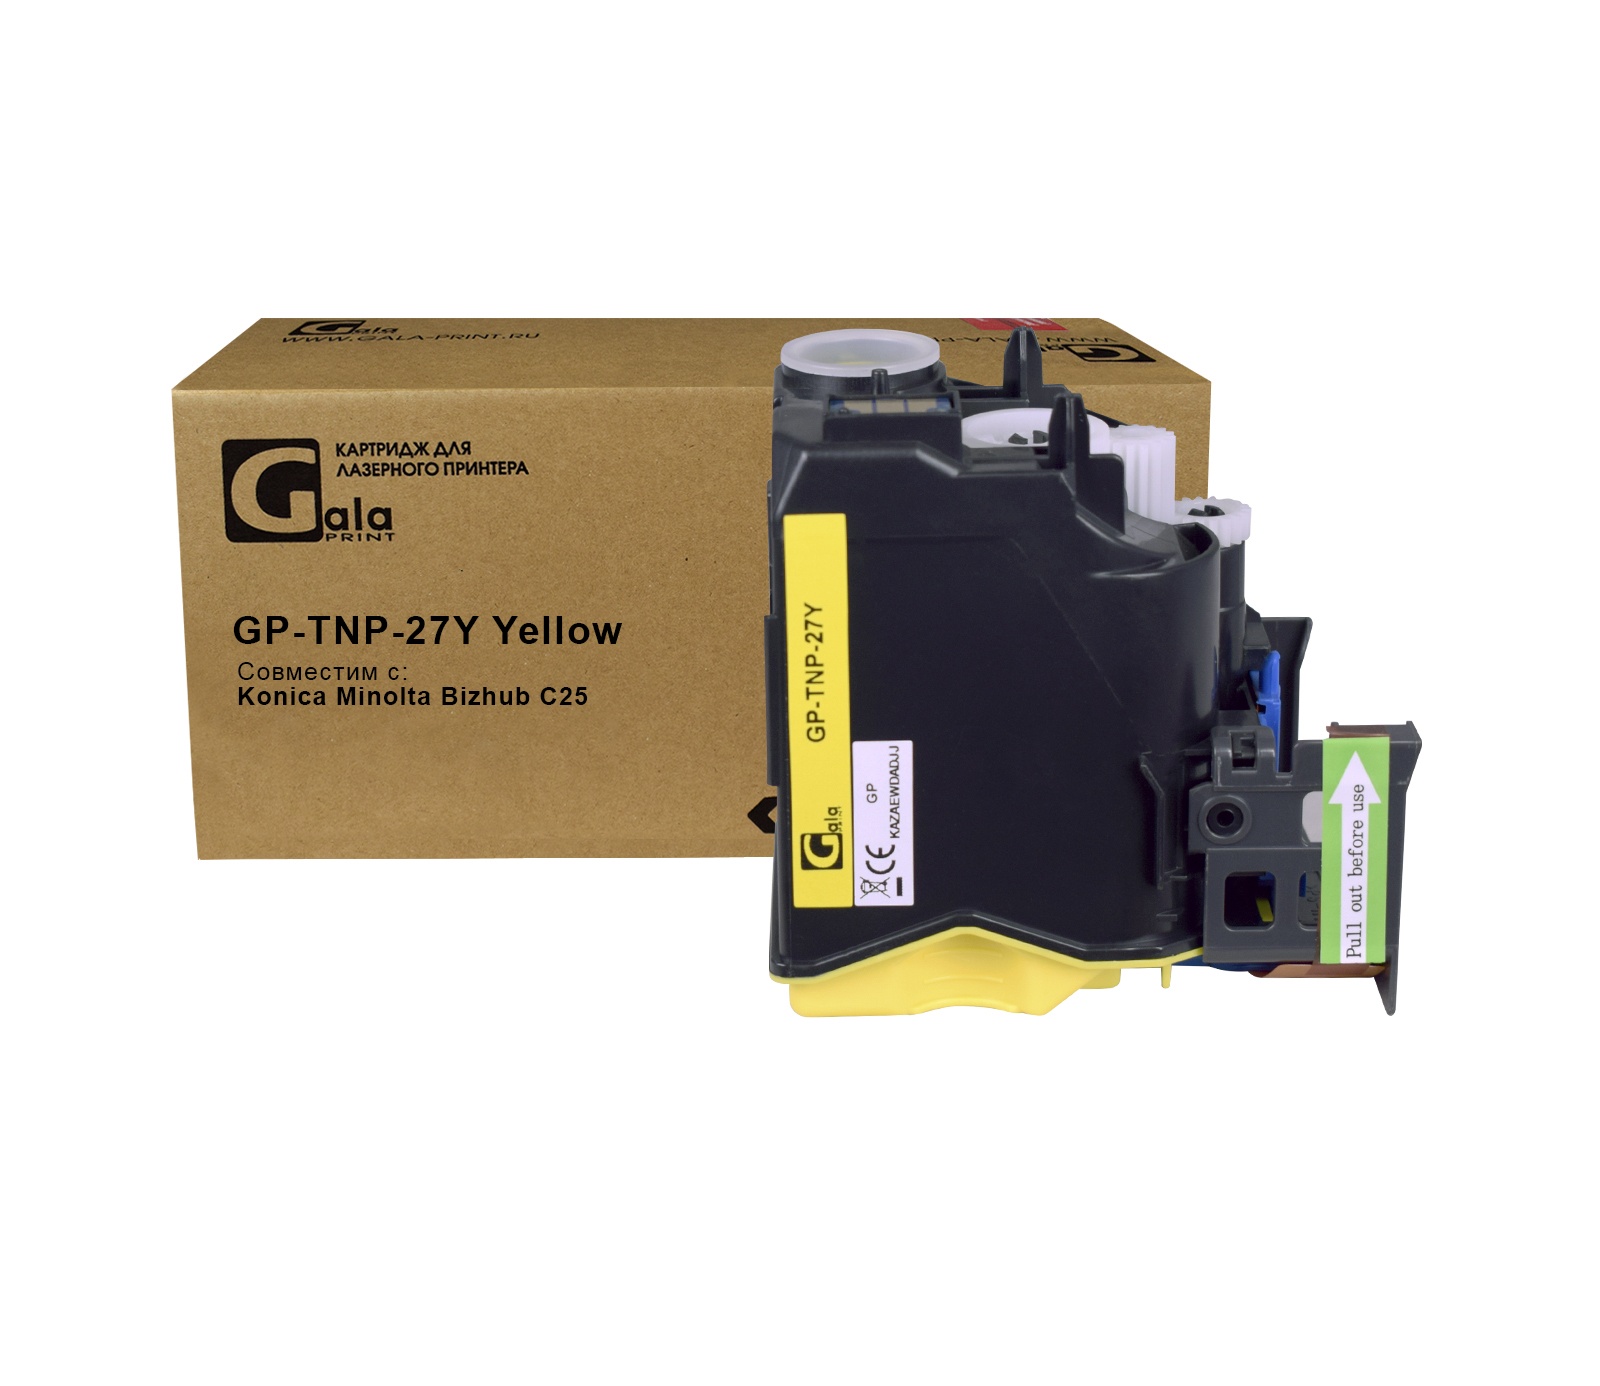 Картридж GP-TNP-27Y для принтеров Konica Minolta Bizhub C25 Yellow 6000 копий GalaPrint